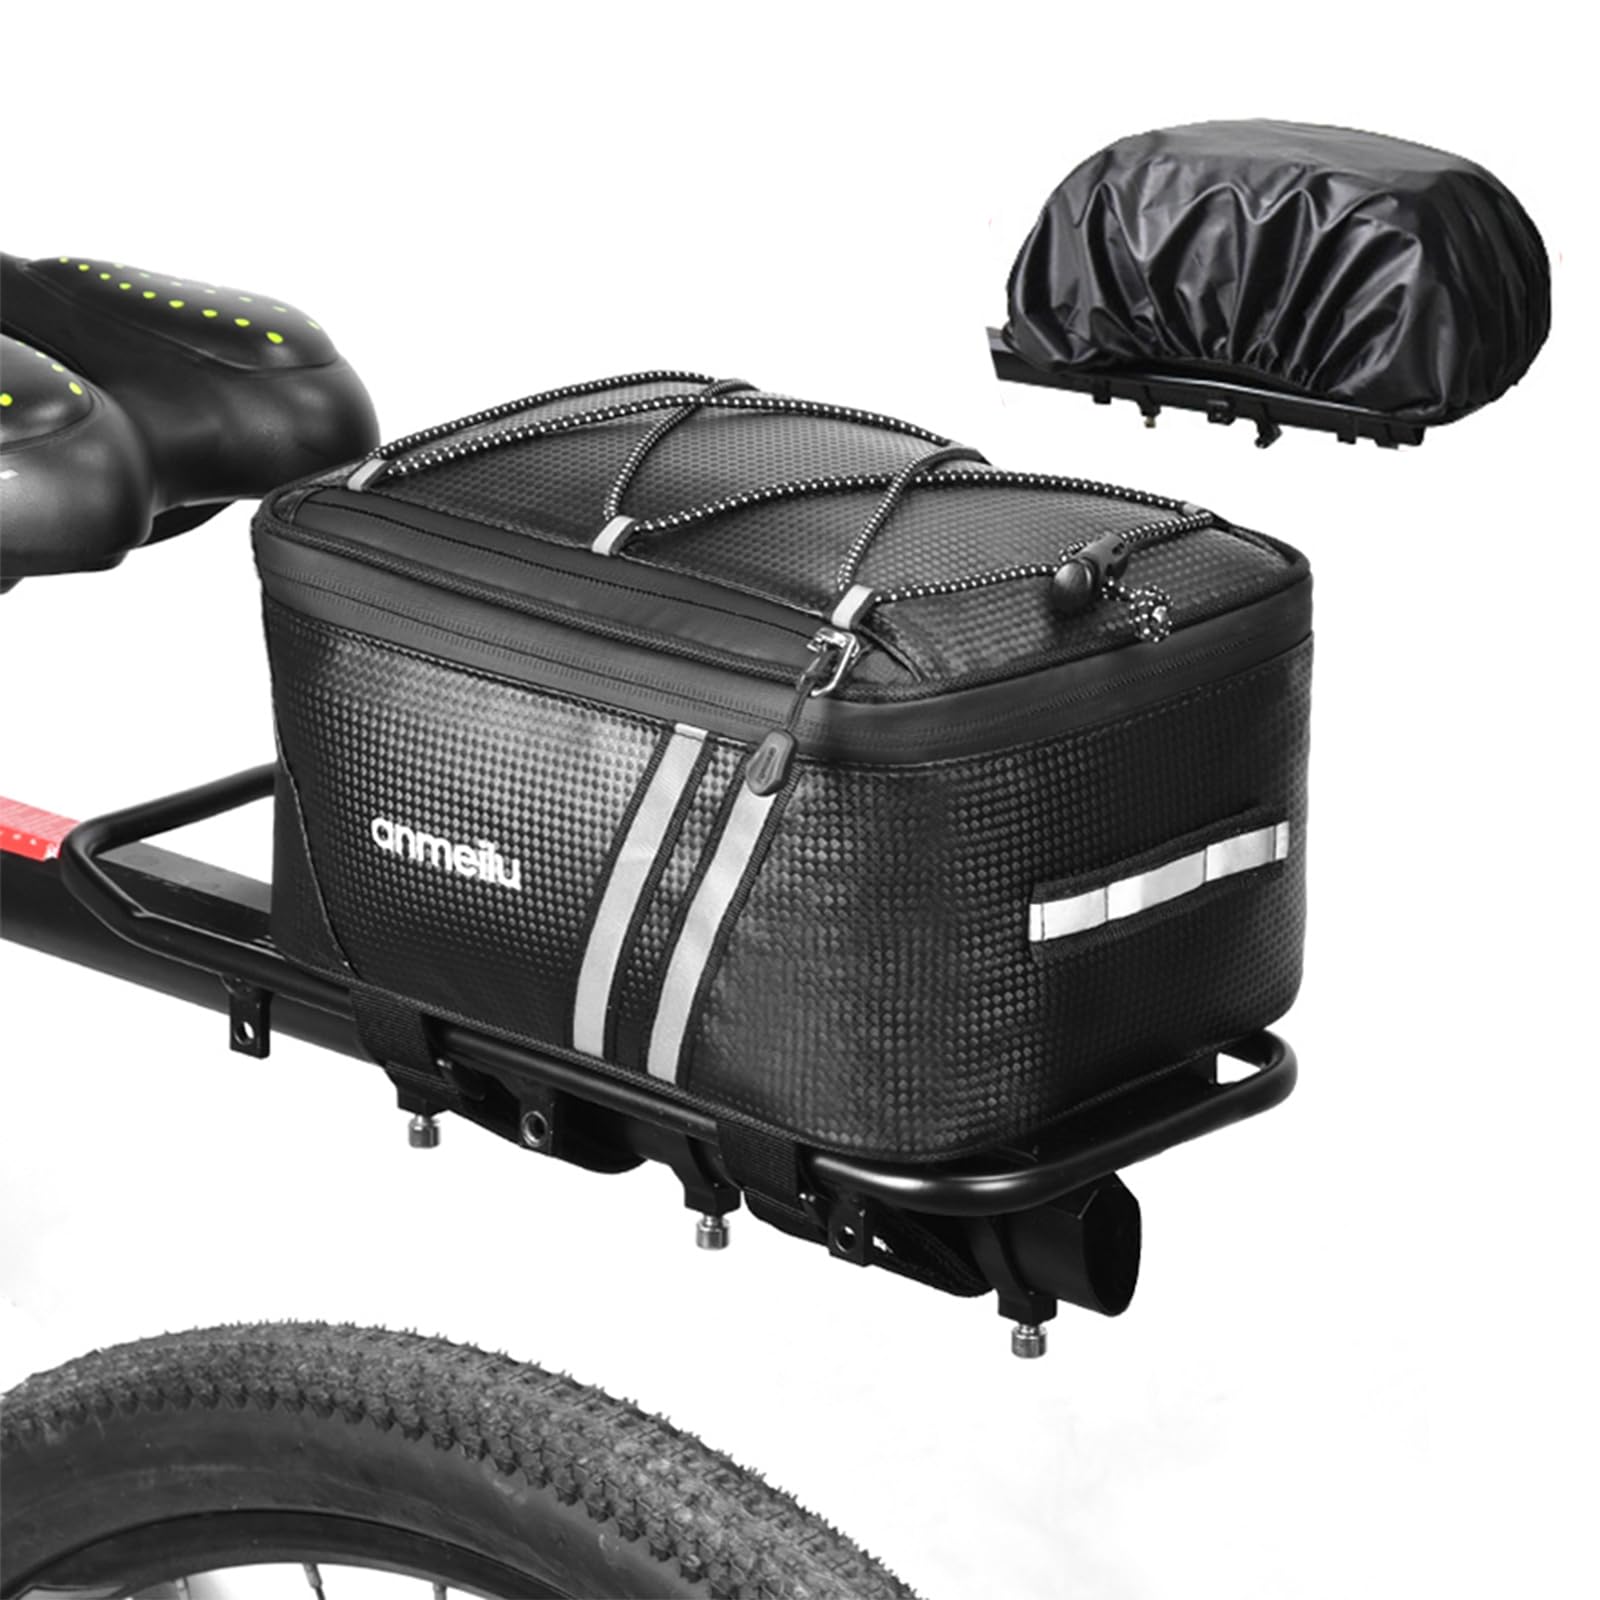 DragonX2 8l Fahrradtasche Fahrradtaschen Wasserdicht Fahrradtasche Leder Tasche Fahrrad Mit Reflektorstreifen, RegenhüLle, Sicherheitsgurten, Wasserdichtem ReißVerschluss, FüR Fahrradtransportartikel von DragonX2